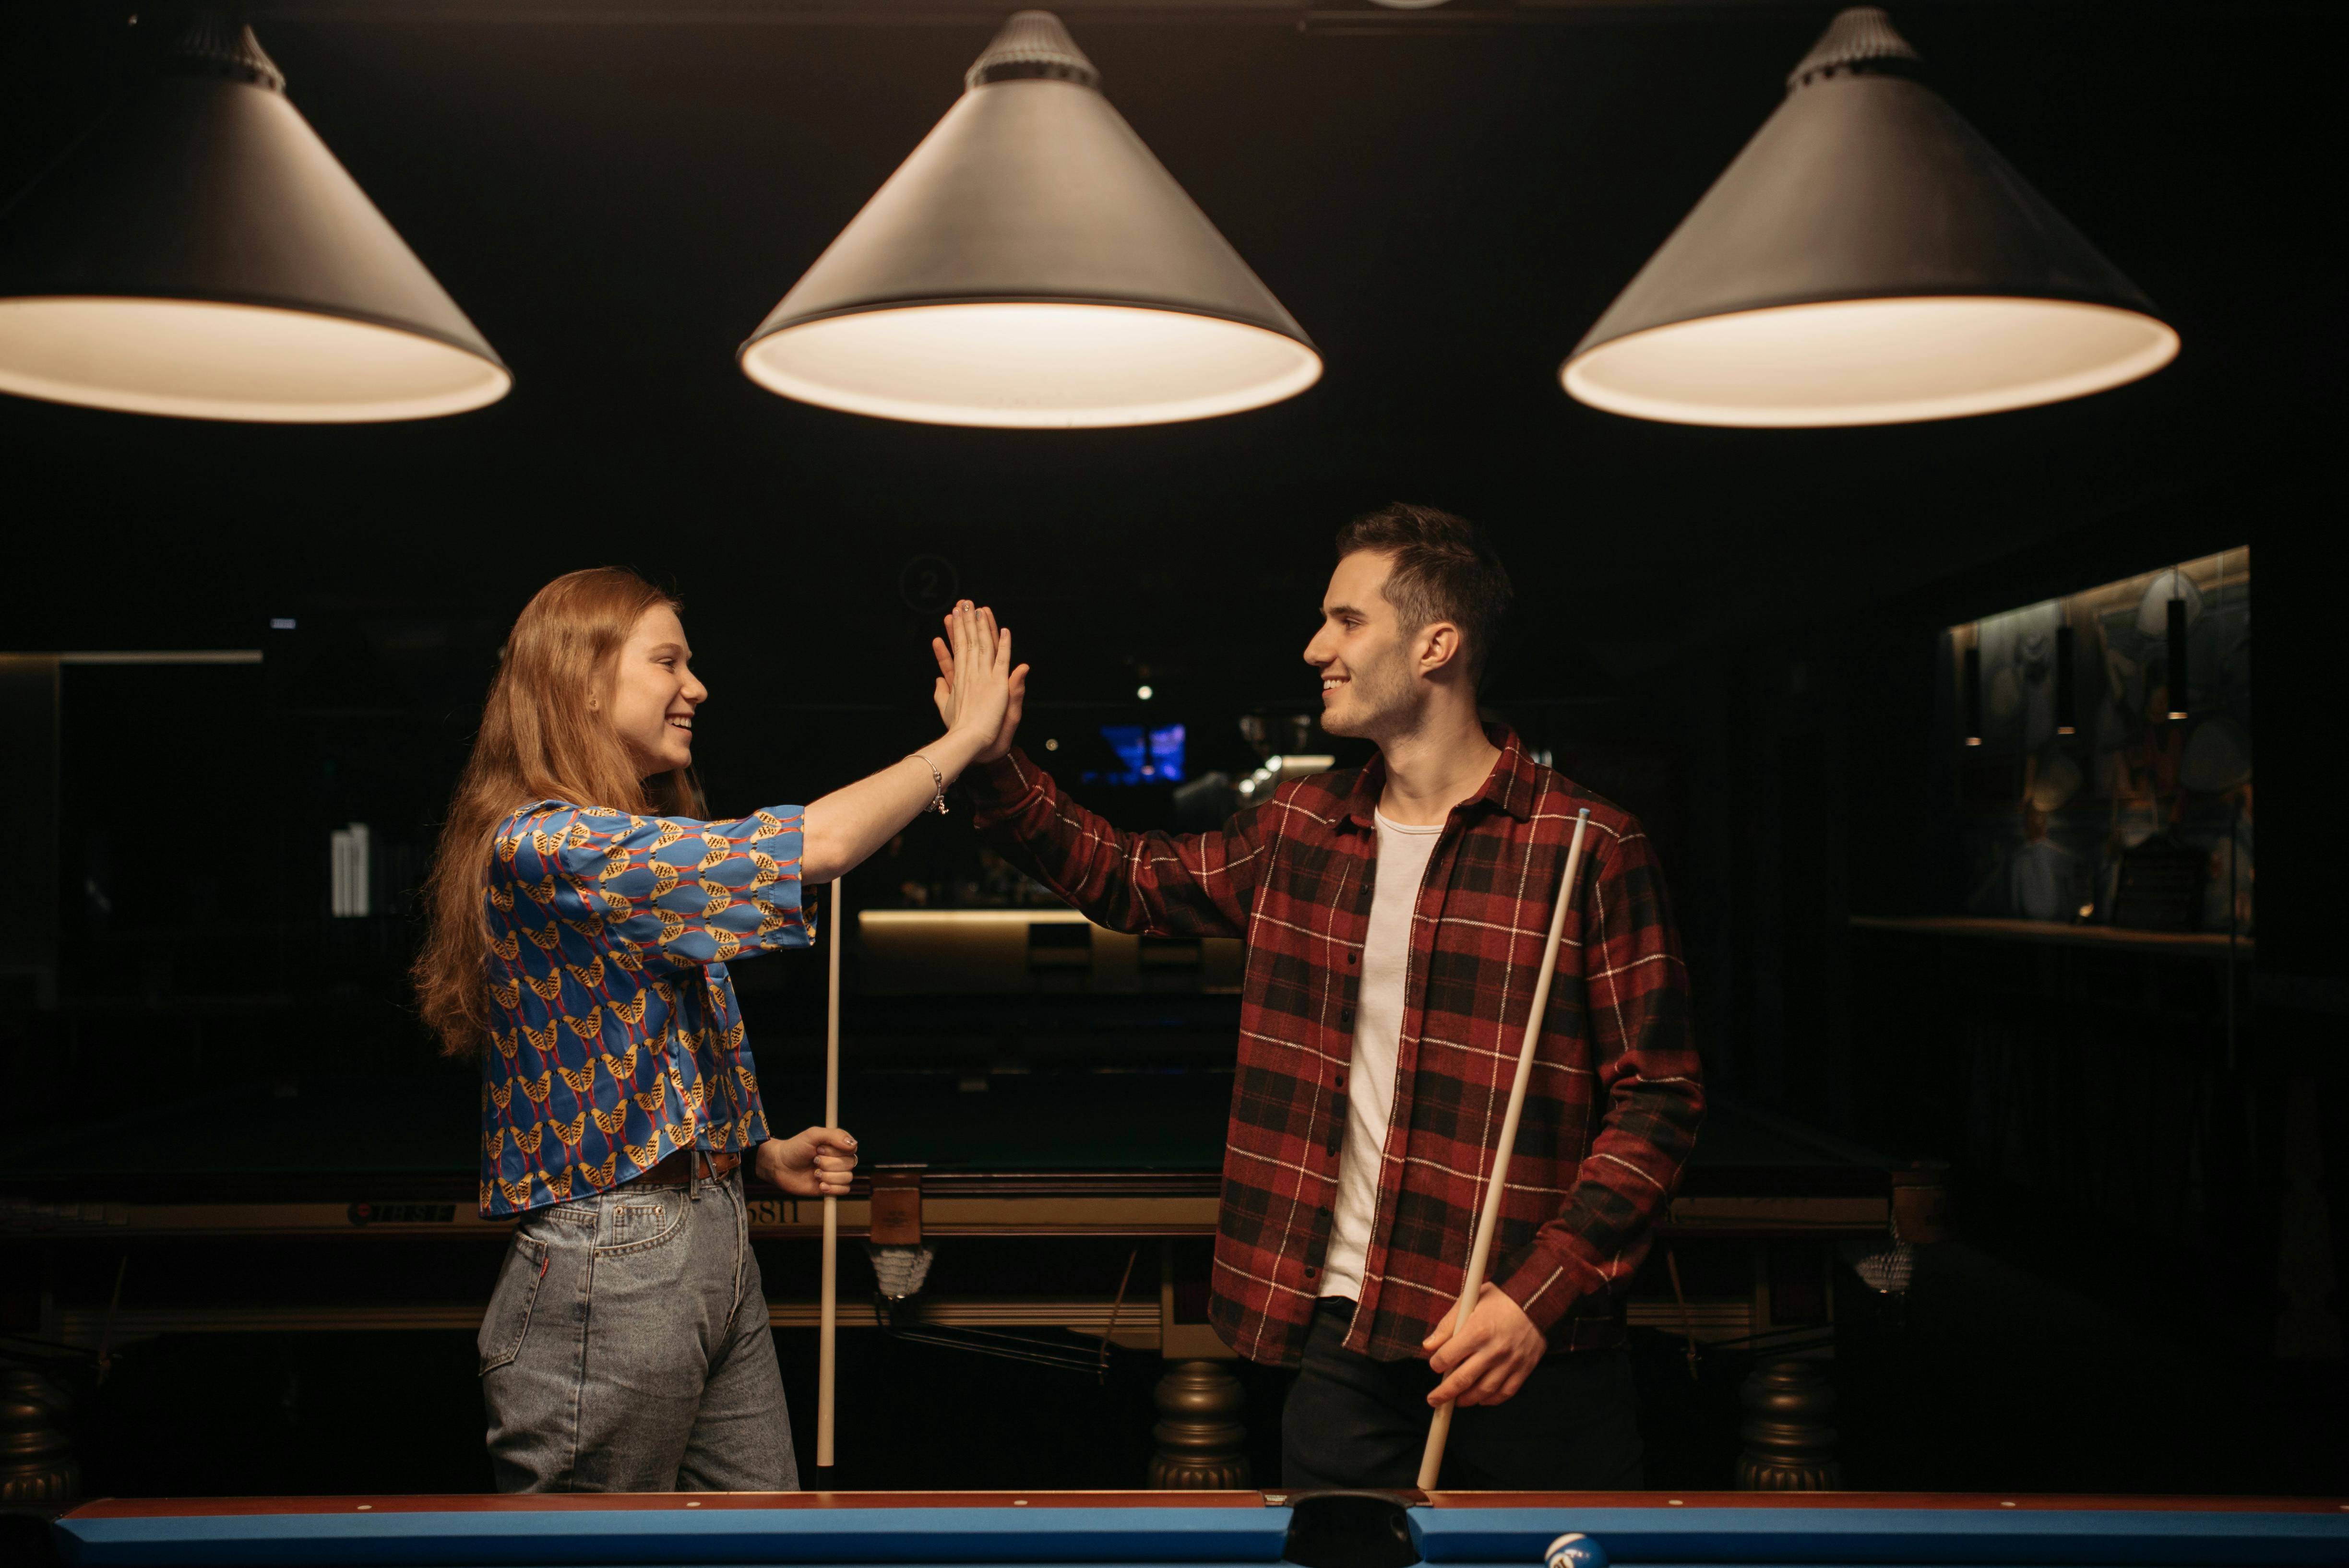 Ein Mann und eine Frau, die sich in der Nähe eines Billardtisches ein High-Five geben | Quelle: Pexels